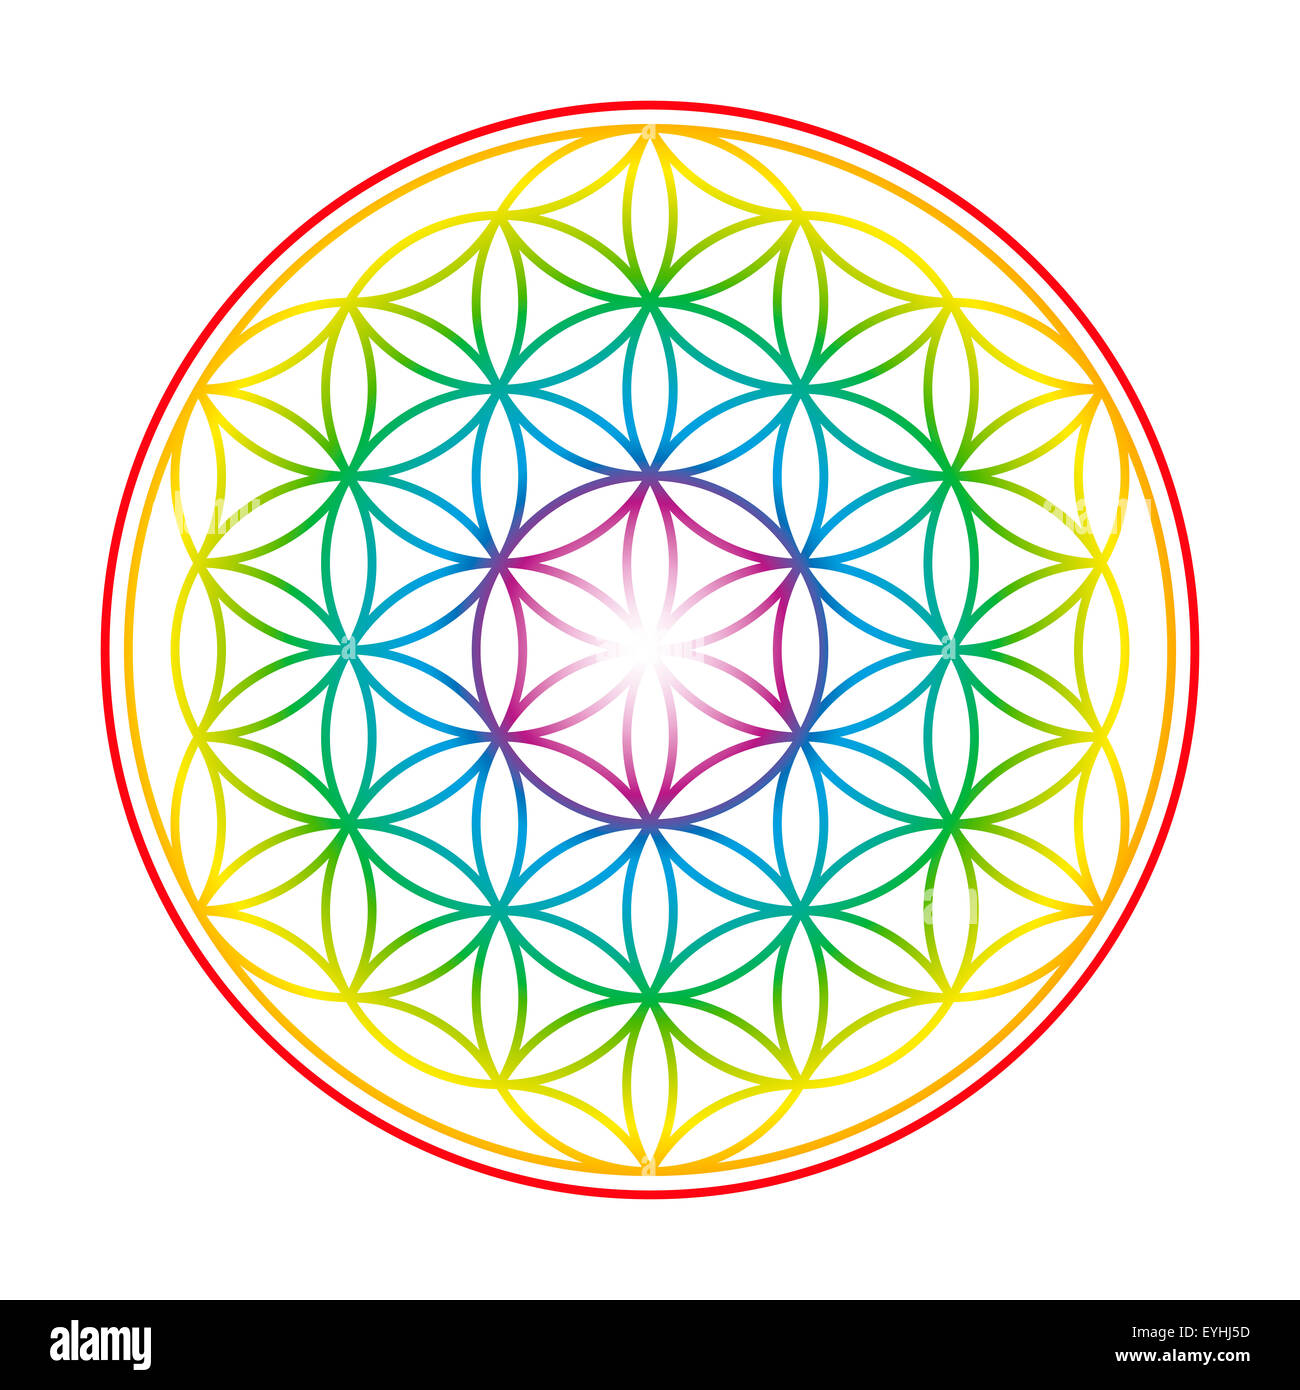 Fiore della Vita mostrato come un delicato fascio arcobaleno simbolo colorato di armonia. Immagine su sfondo bianco. Foto Stock